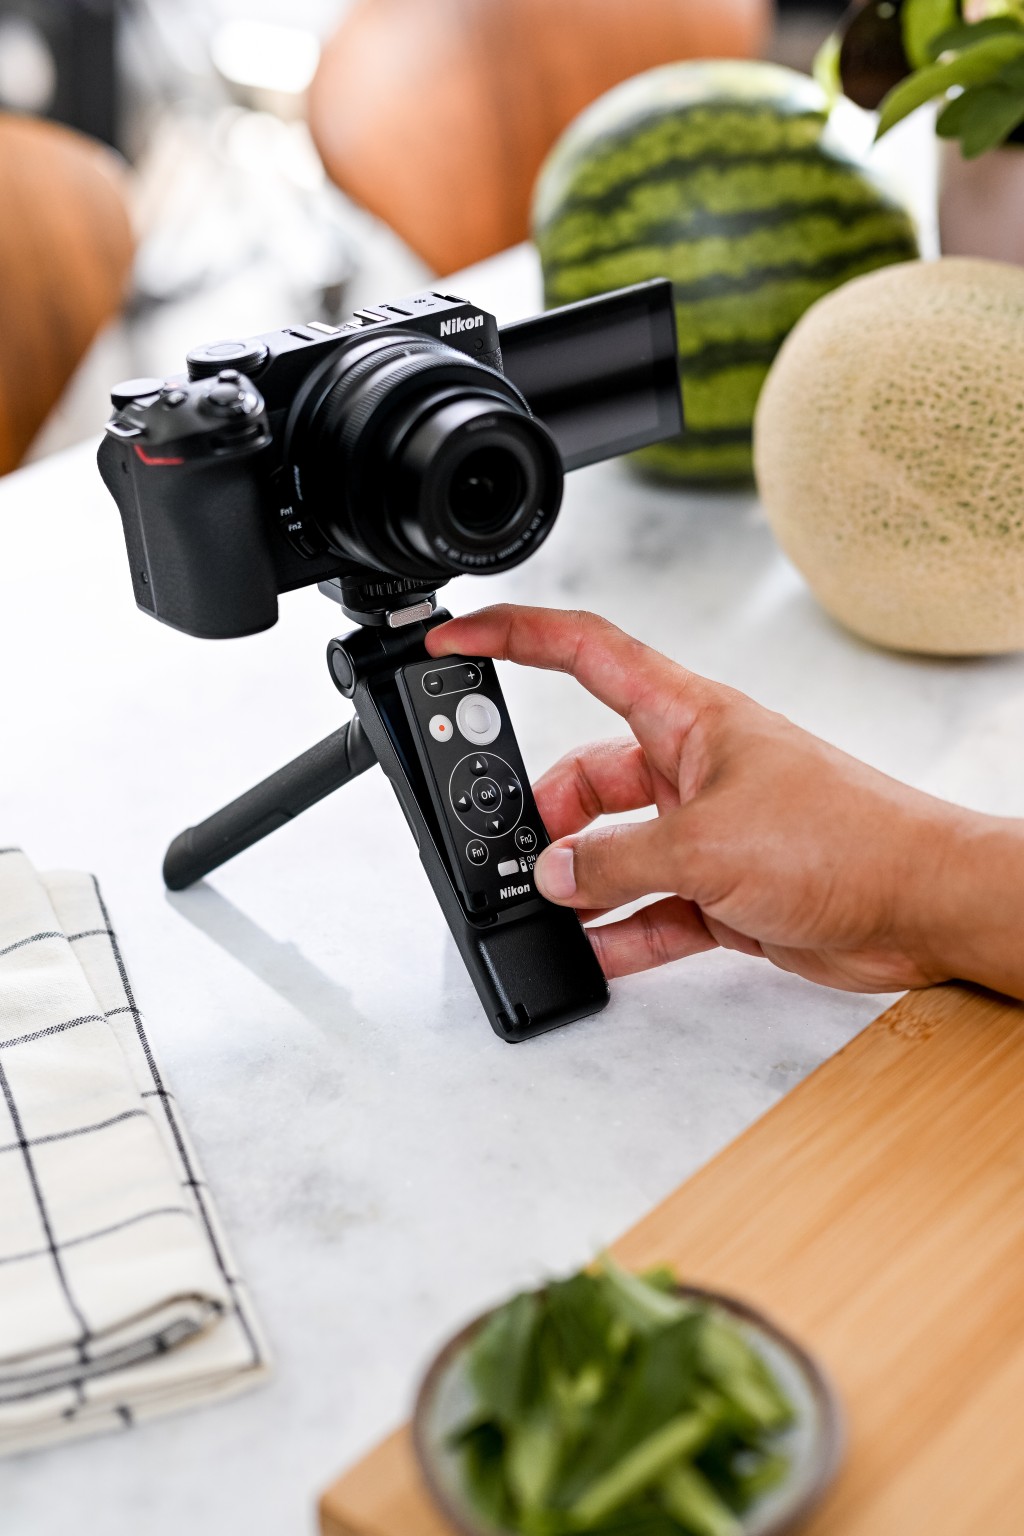 3吋LCD芒可以180度翻出，配合SmallRig Triple Grip 3070手柄，自拍取景更輕鬆，還可取出Remote遙控拍攝。